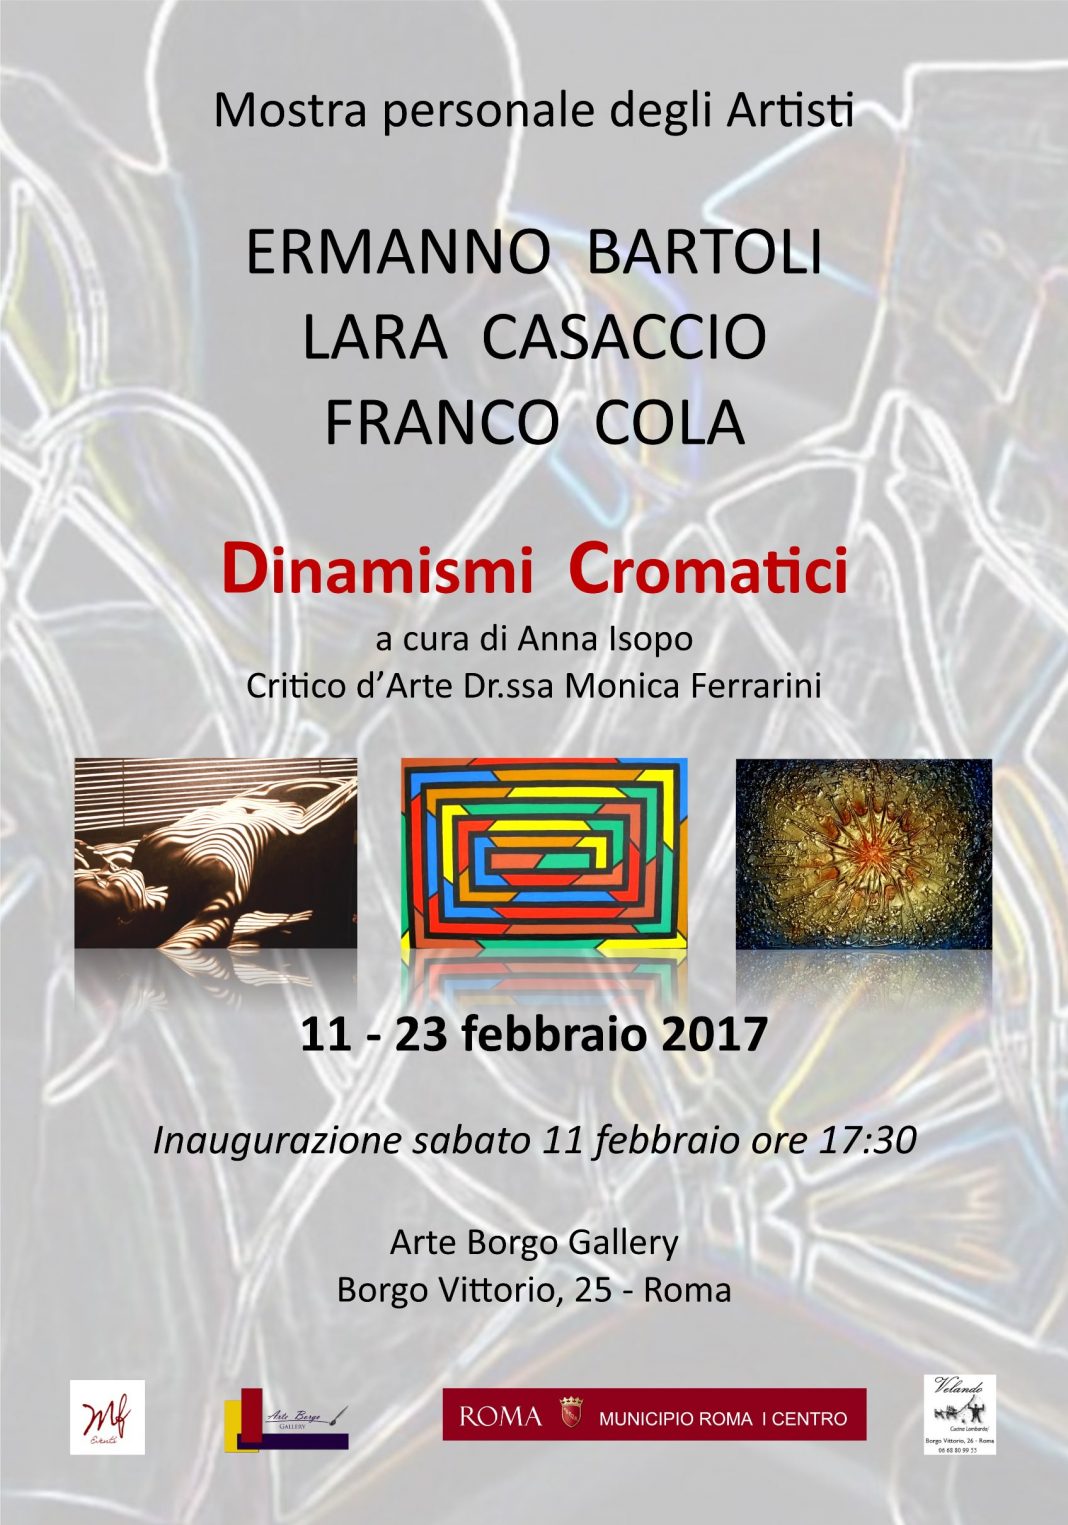 Ermanno Bartoli / Lara Casaccio / Franco Cola – Dinamismi Cromaticihttps://www.exibart.com/repository/media/eventi/2017/02/ermanno-bartoli-lara-casaccio-franco-cola-8211-dinamismi-cromatici-1068x1525.jpg